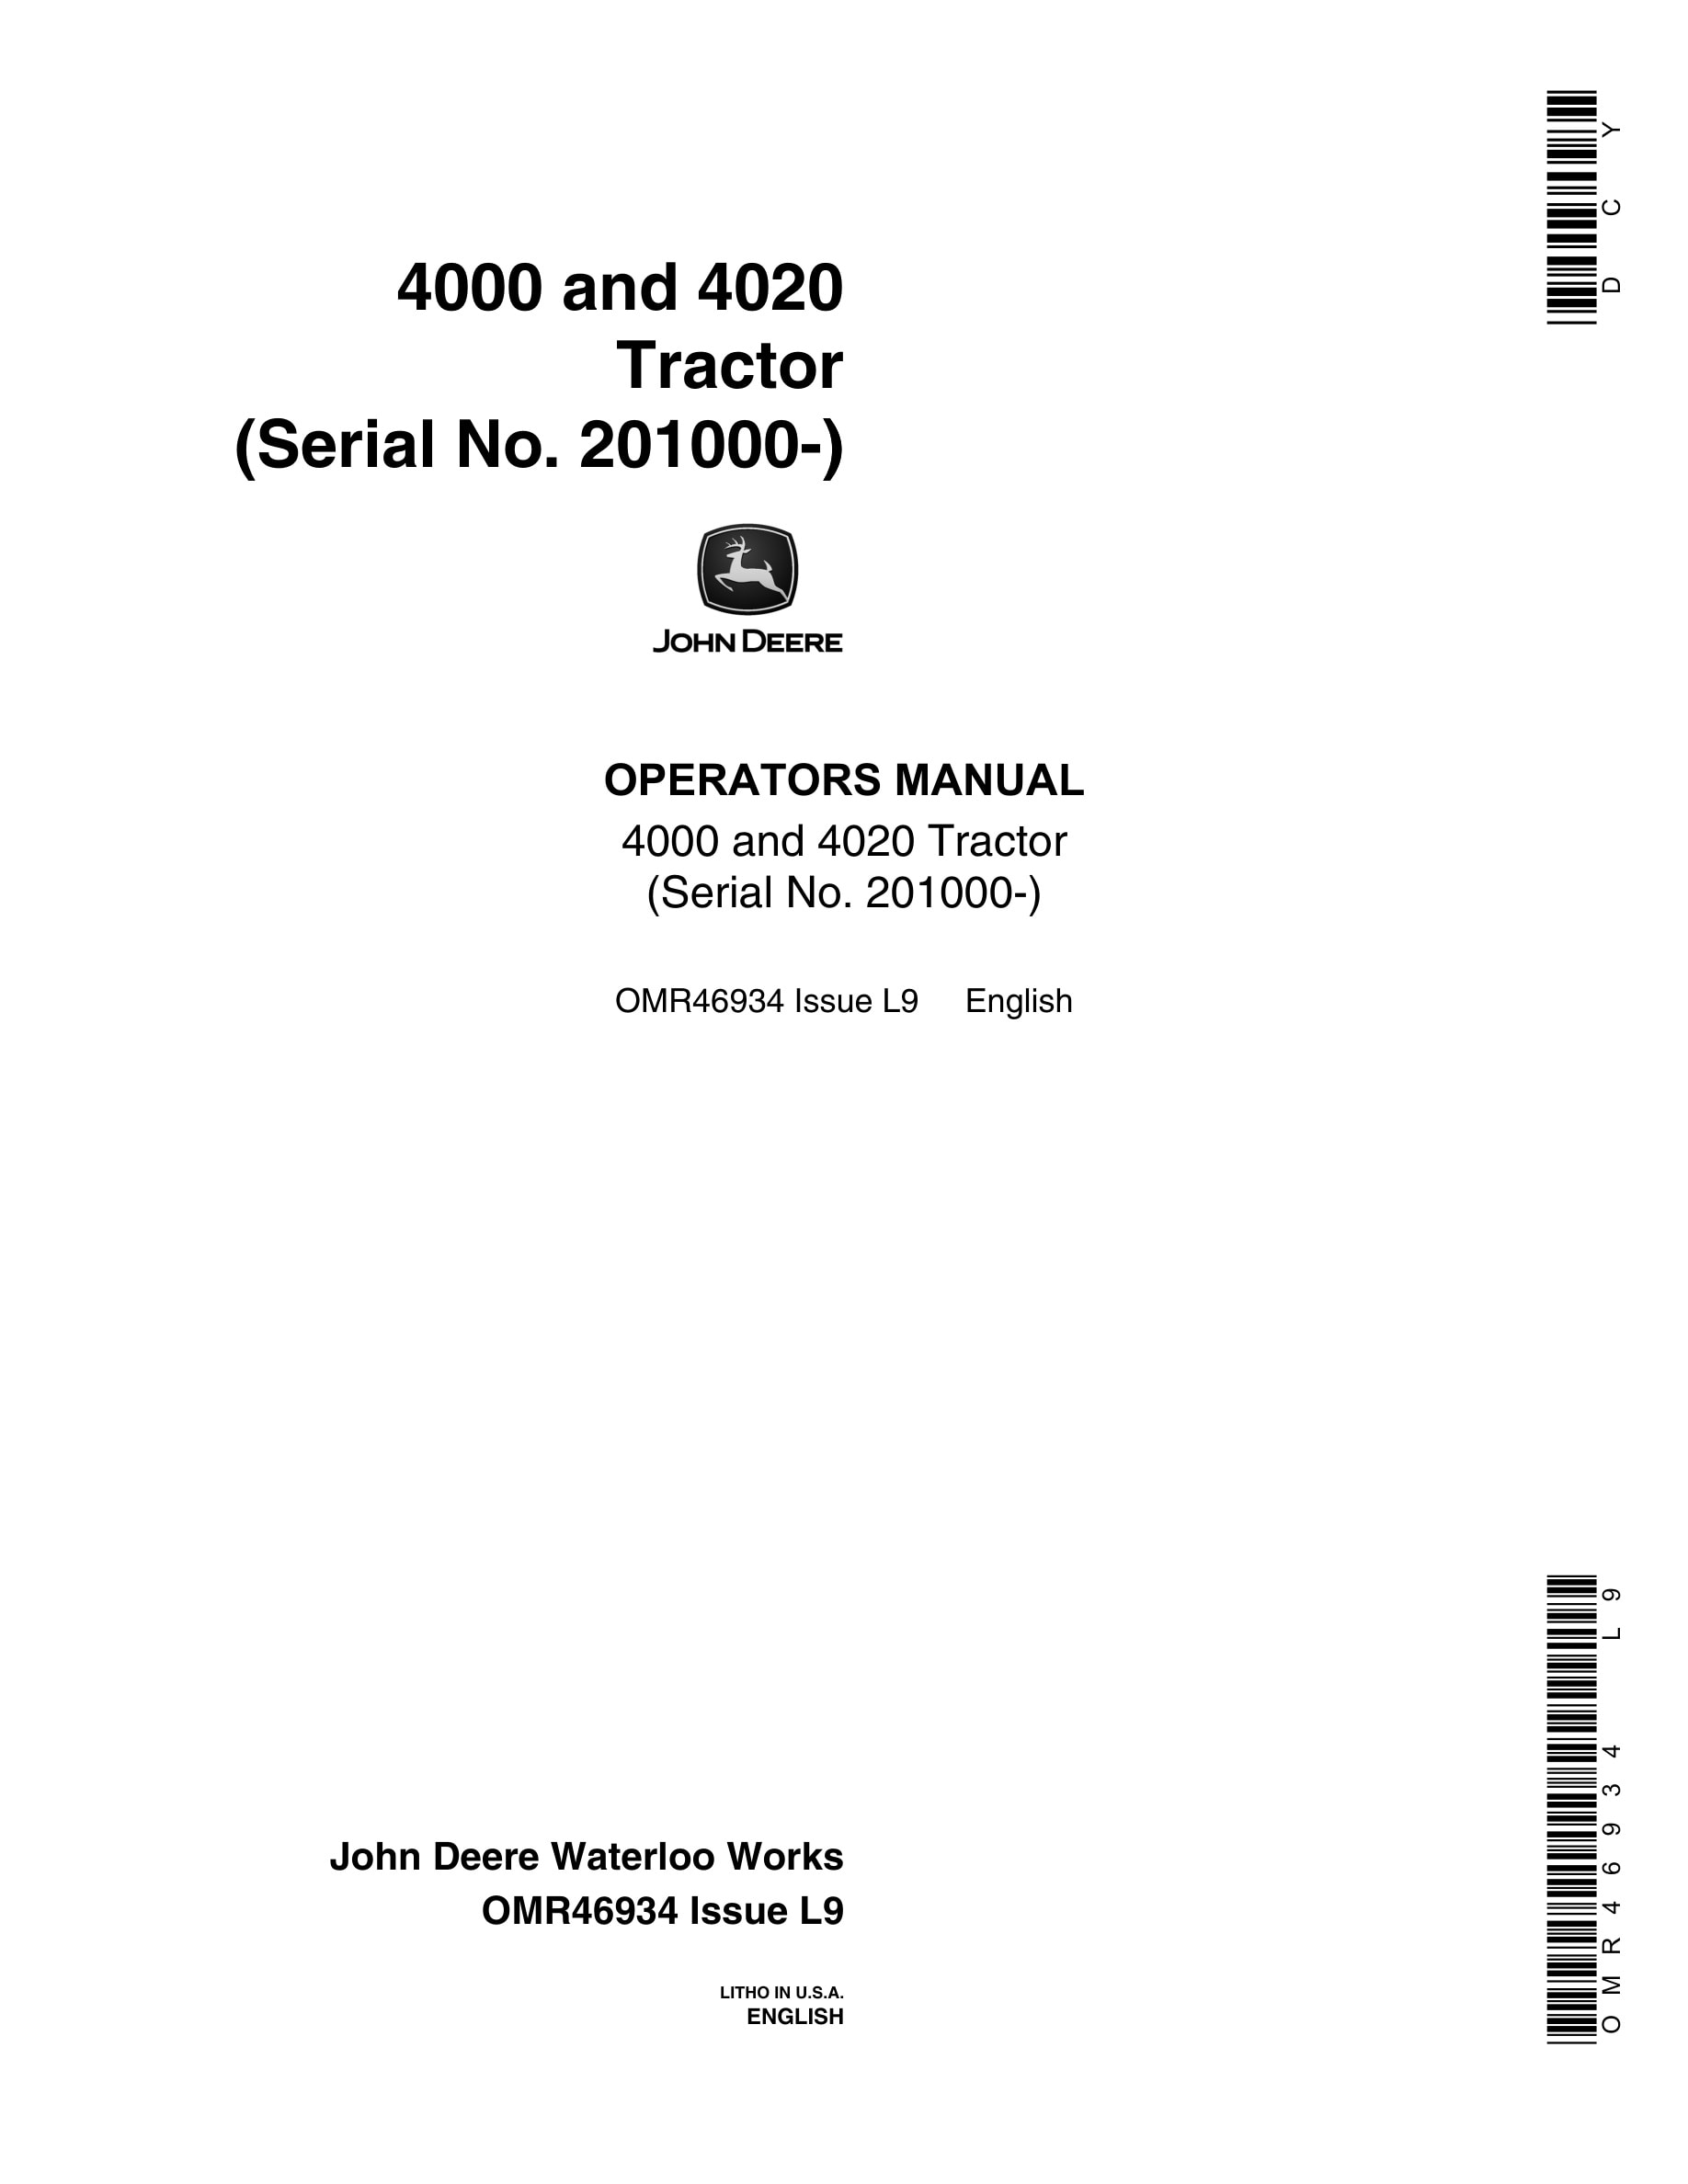 John Deere 4000 and 4020 Tractor Operator Manual OMR46934-1